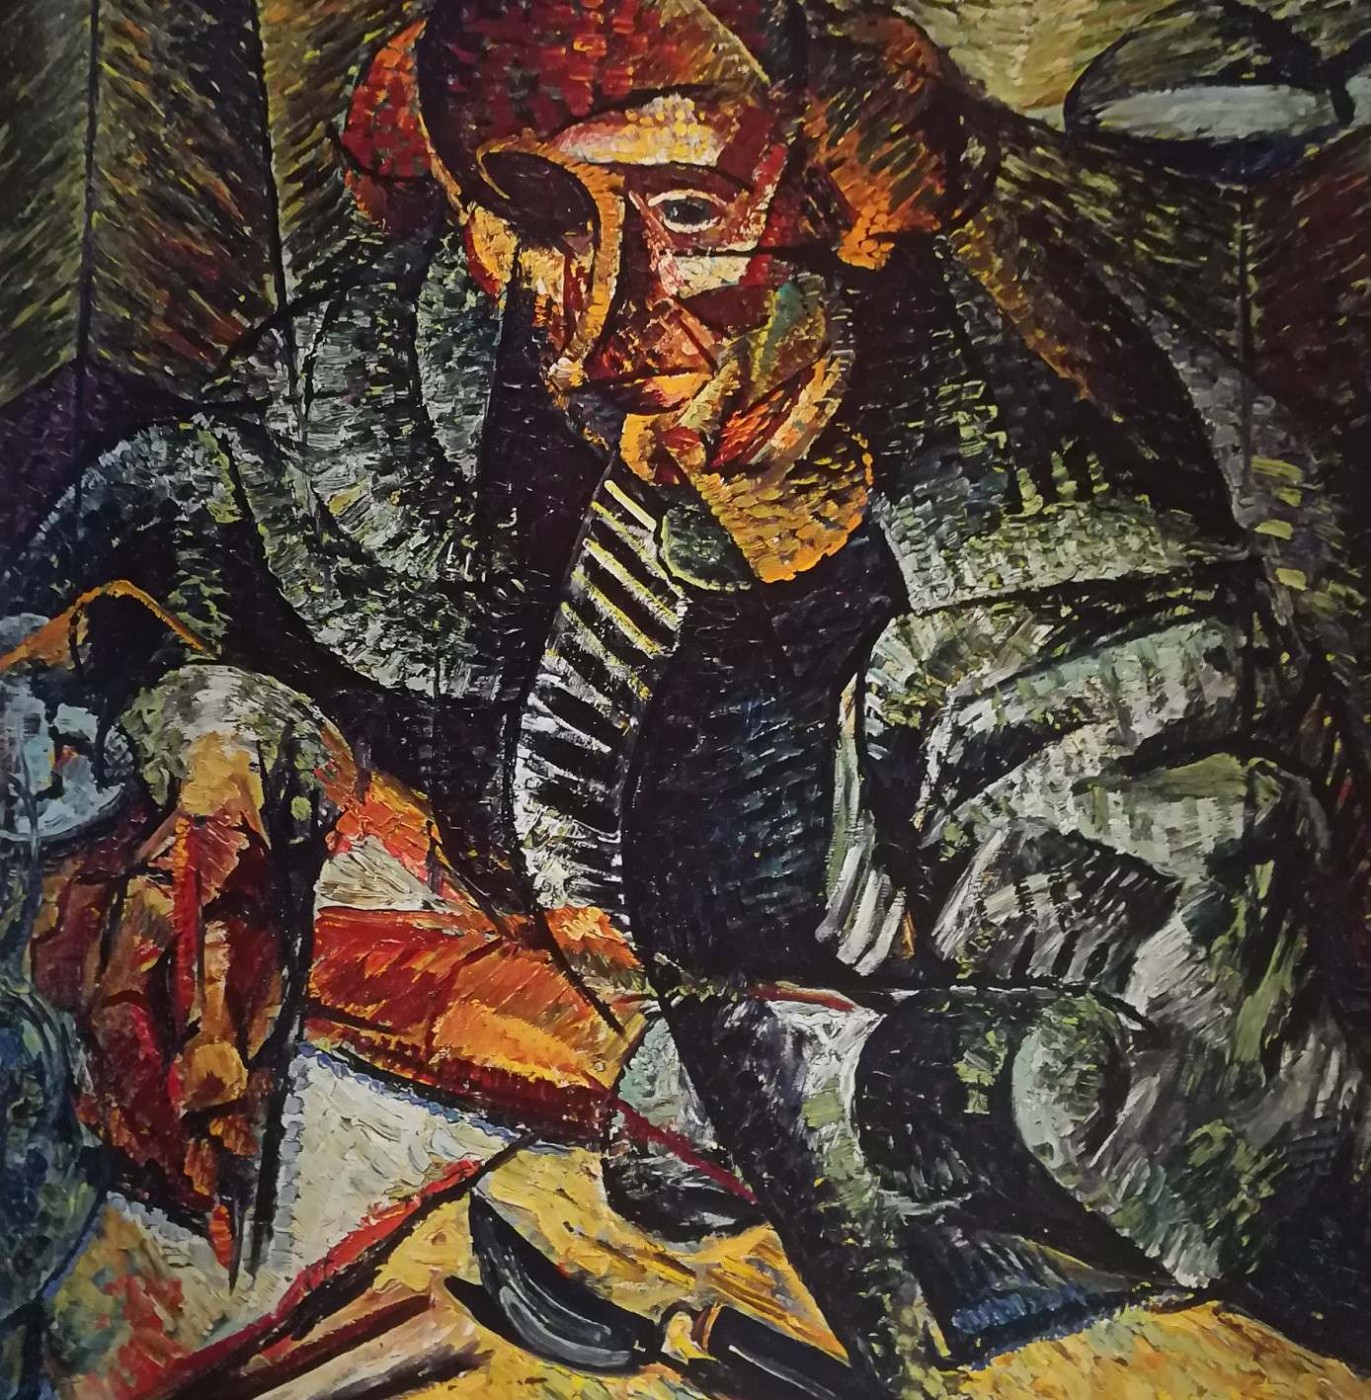 Antograzioso - Umberto Boccioni, 1912